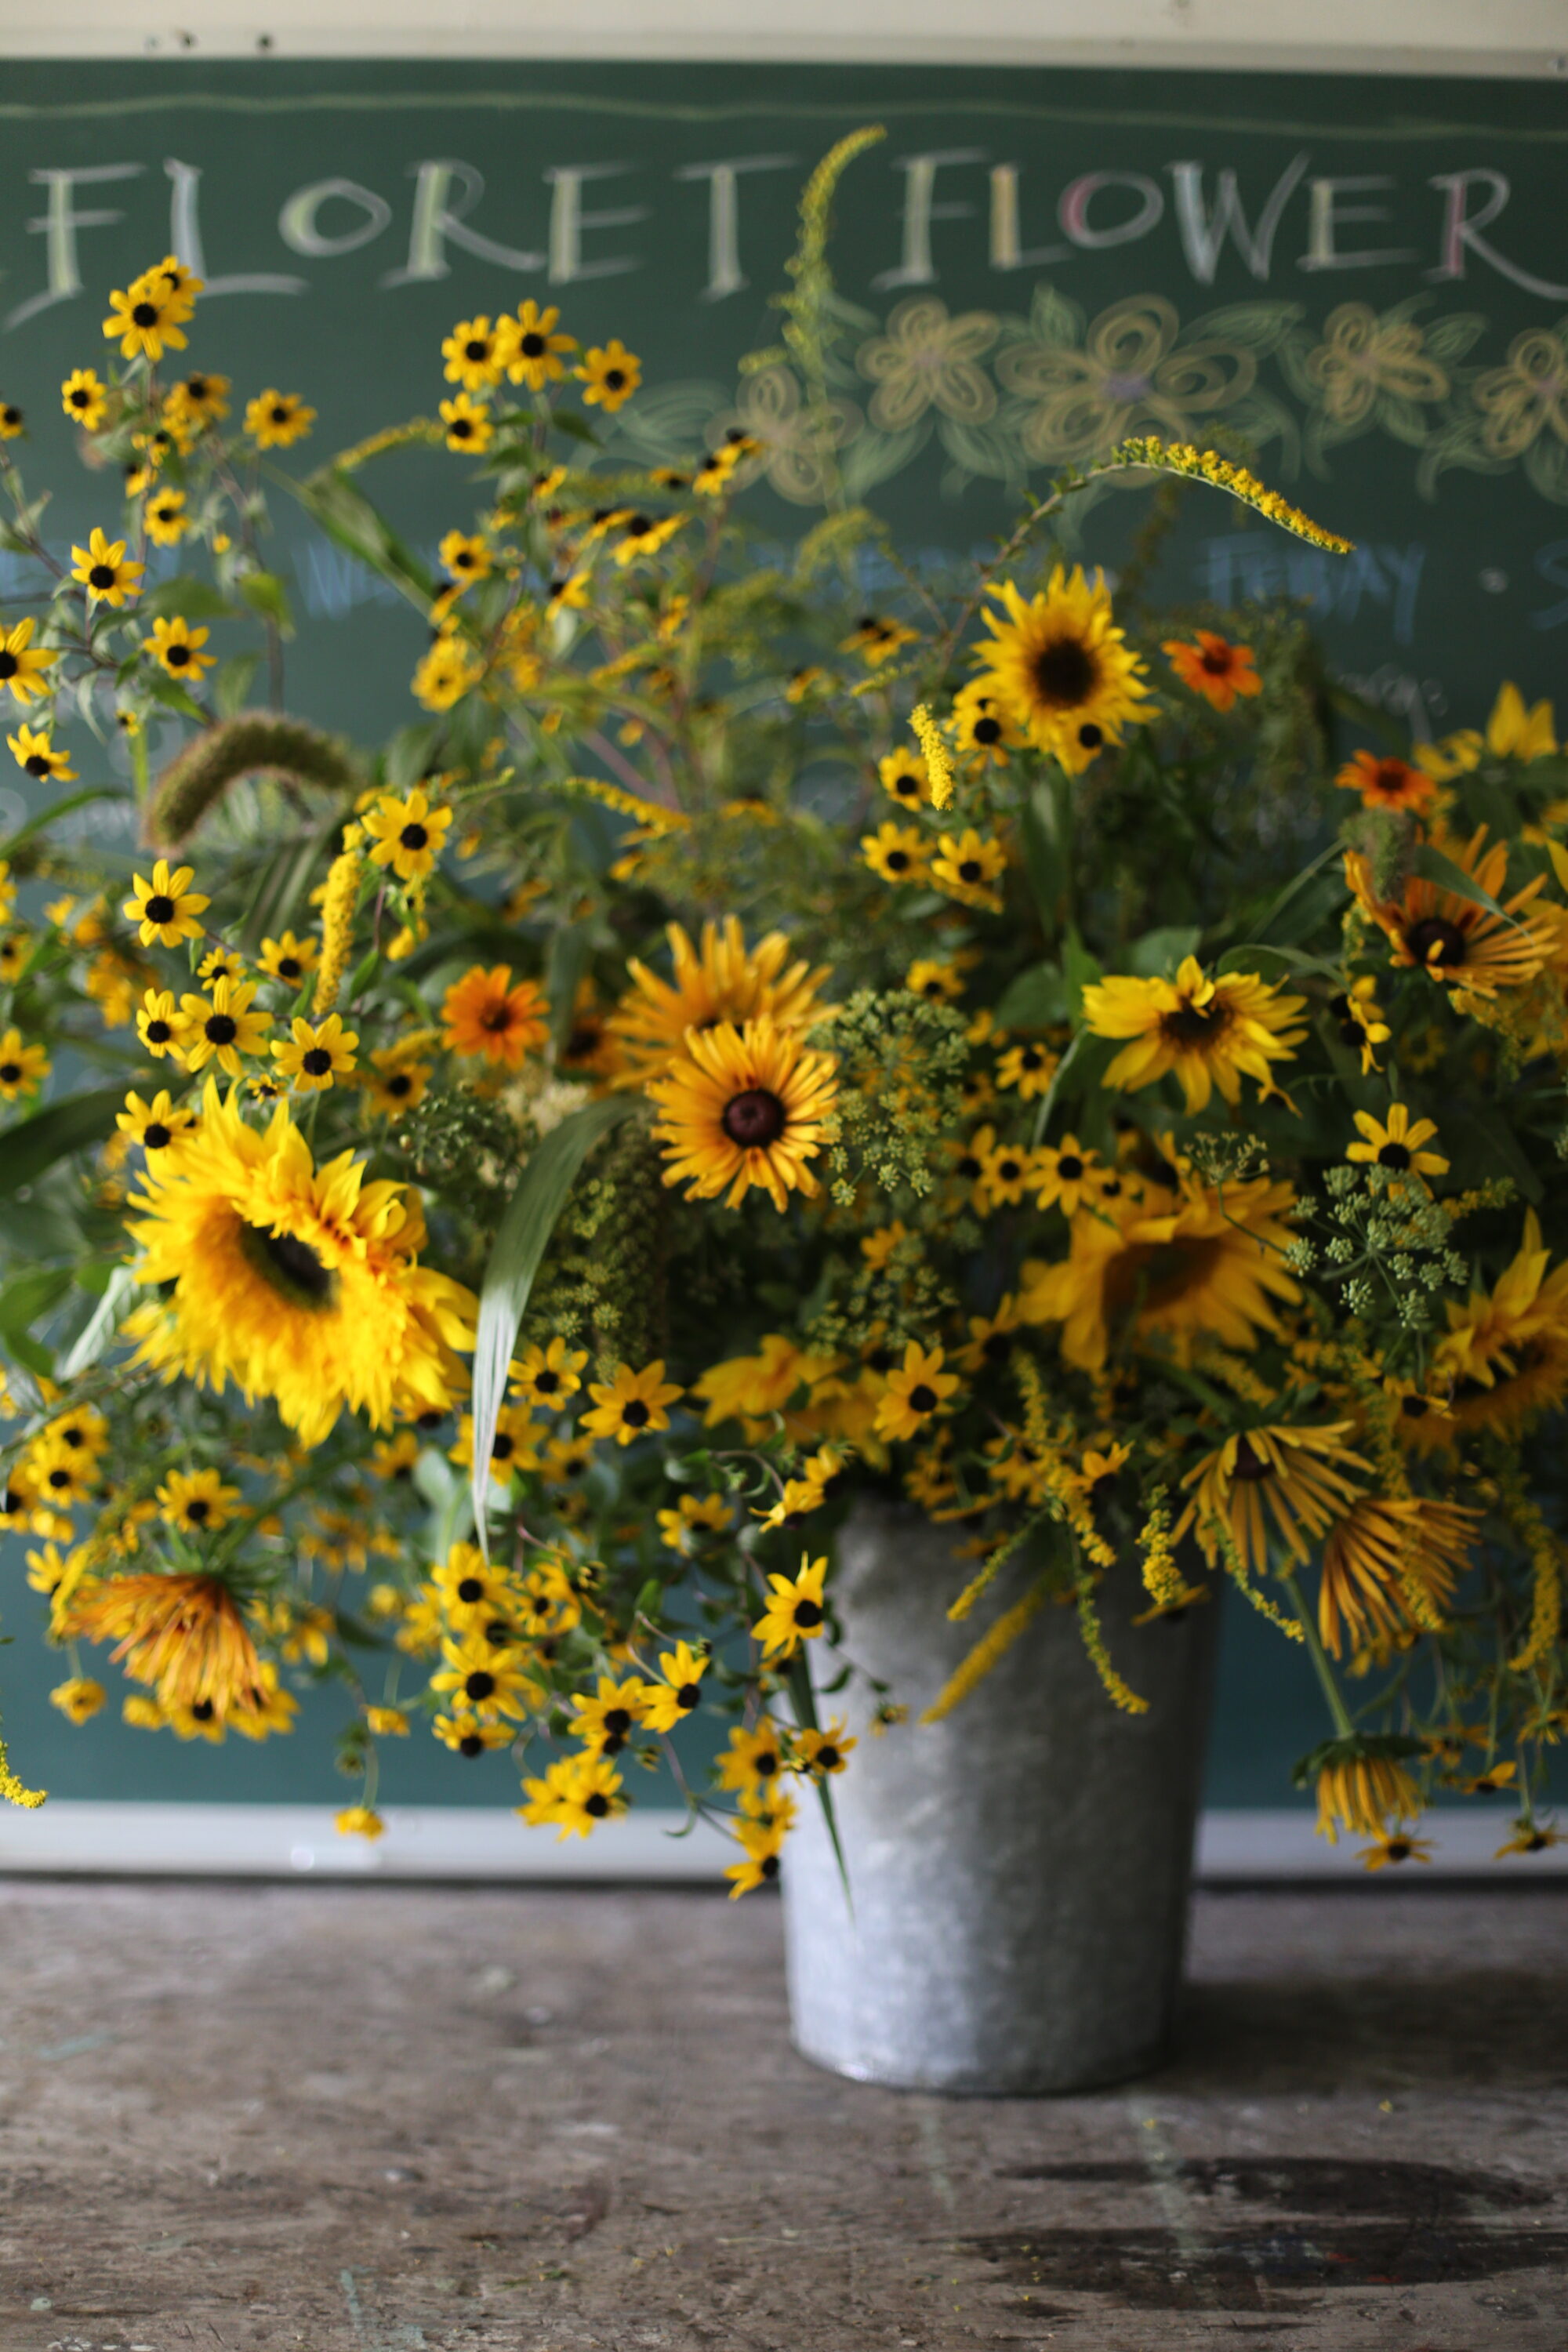 An arrangement of yellow flowers